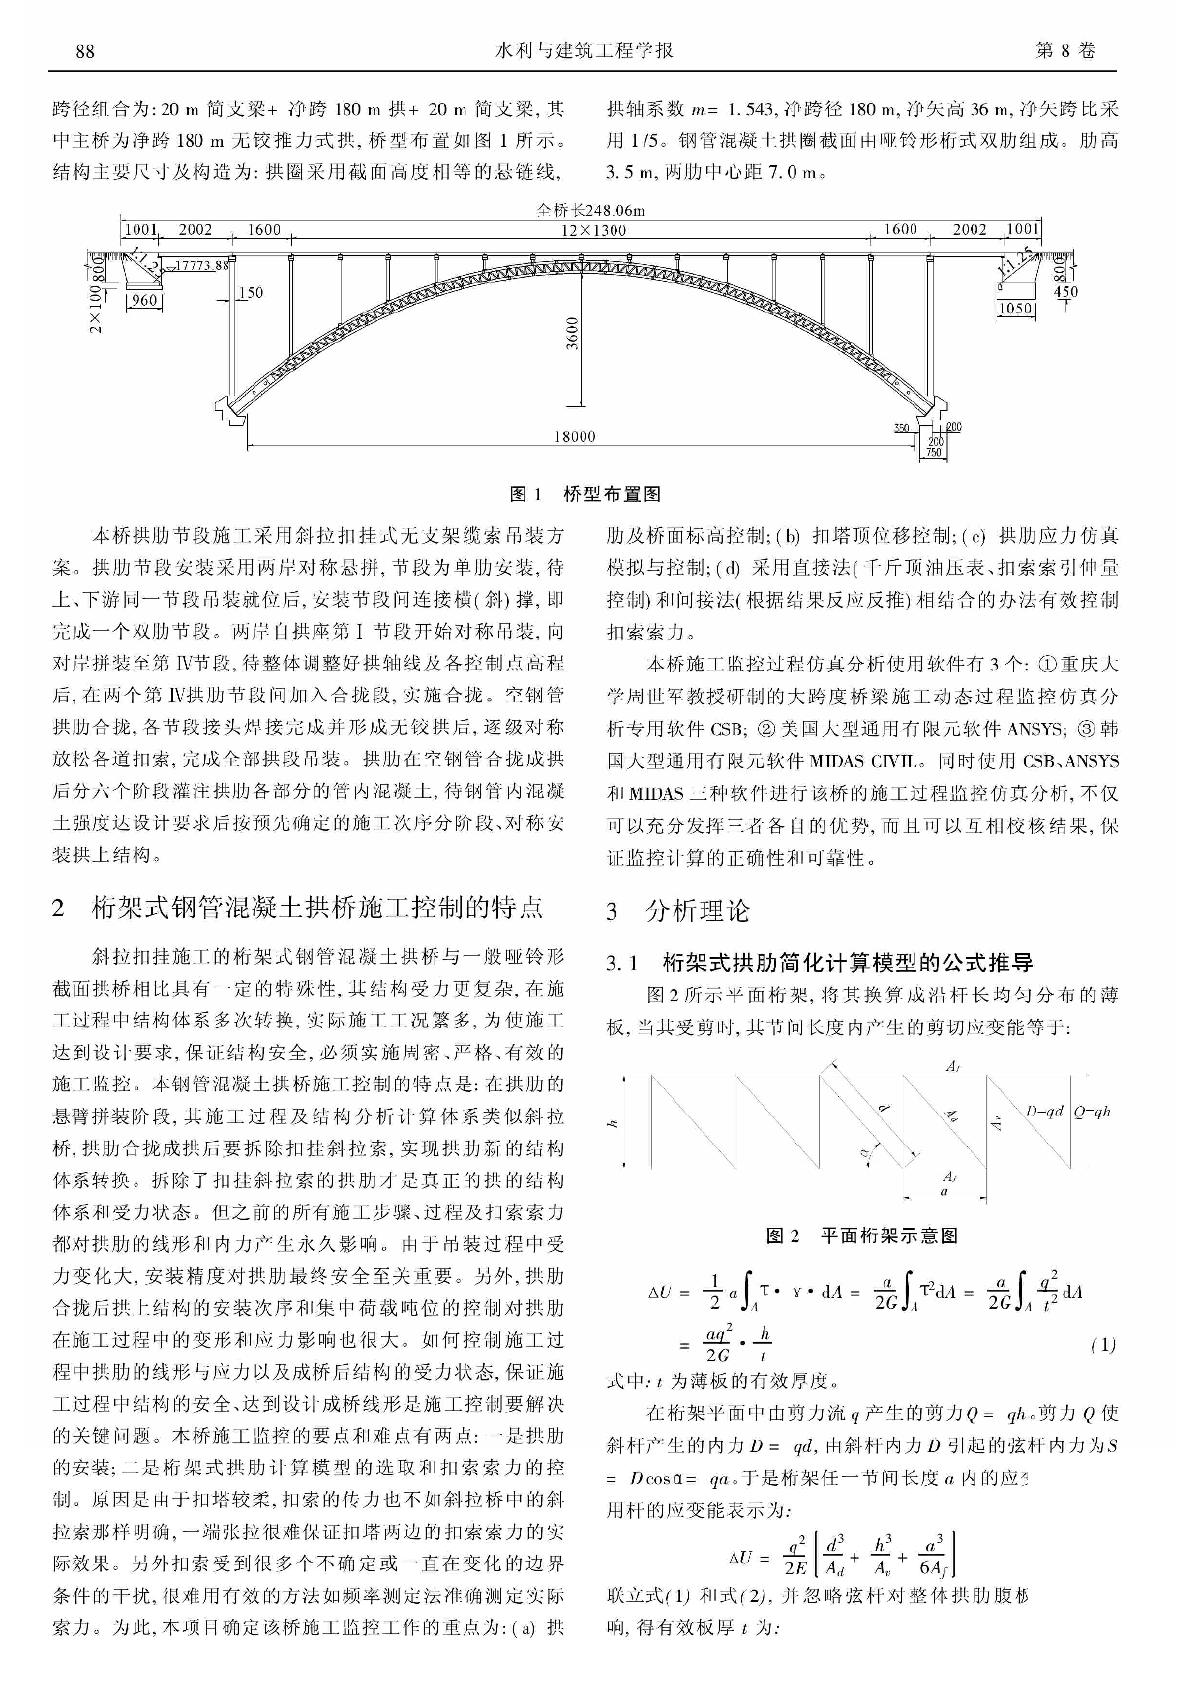 桁架式钢管混凝土拱桥施工动态过程仿真与监控-图二